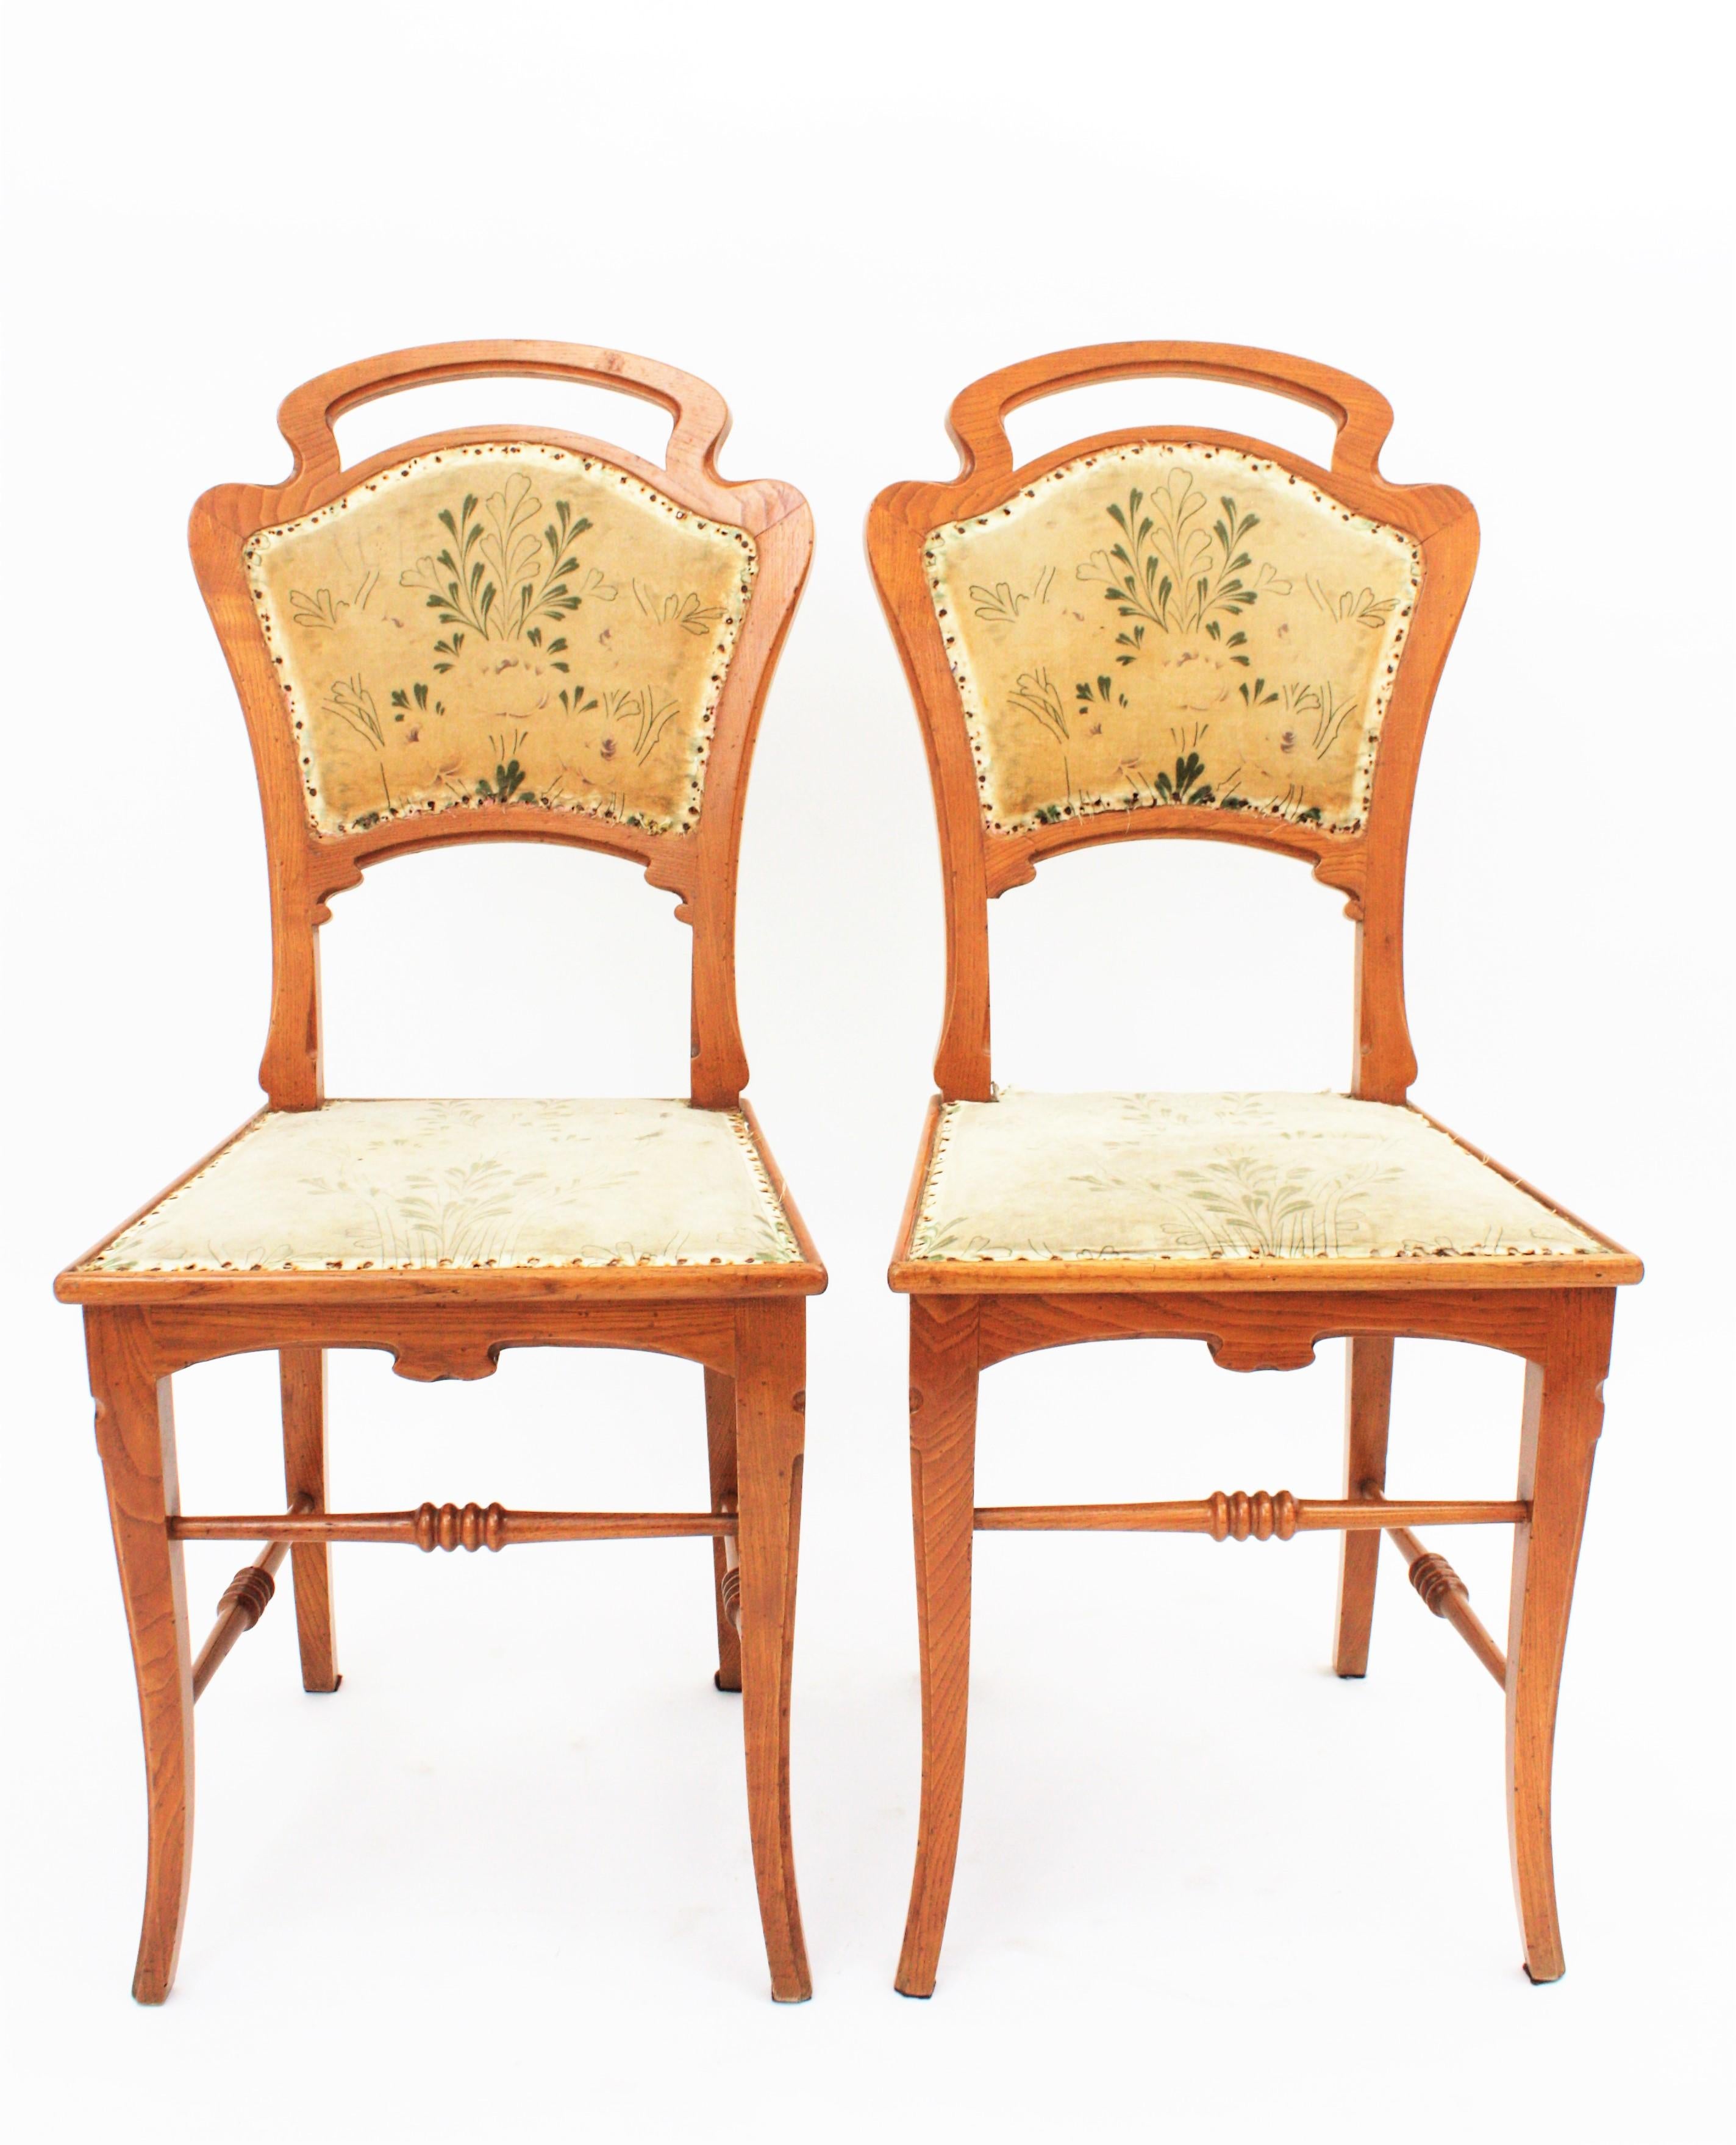 Une paire de chaises Art Nouveau en bois de frêne sculpté et tapissées de leur tissu de velours floral d'origine. Ces chaises élégantes sculptées à la main ont été fabriquées en Espagne dans le style du maître Antoni Gaudí.
Barcelone, années